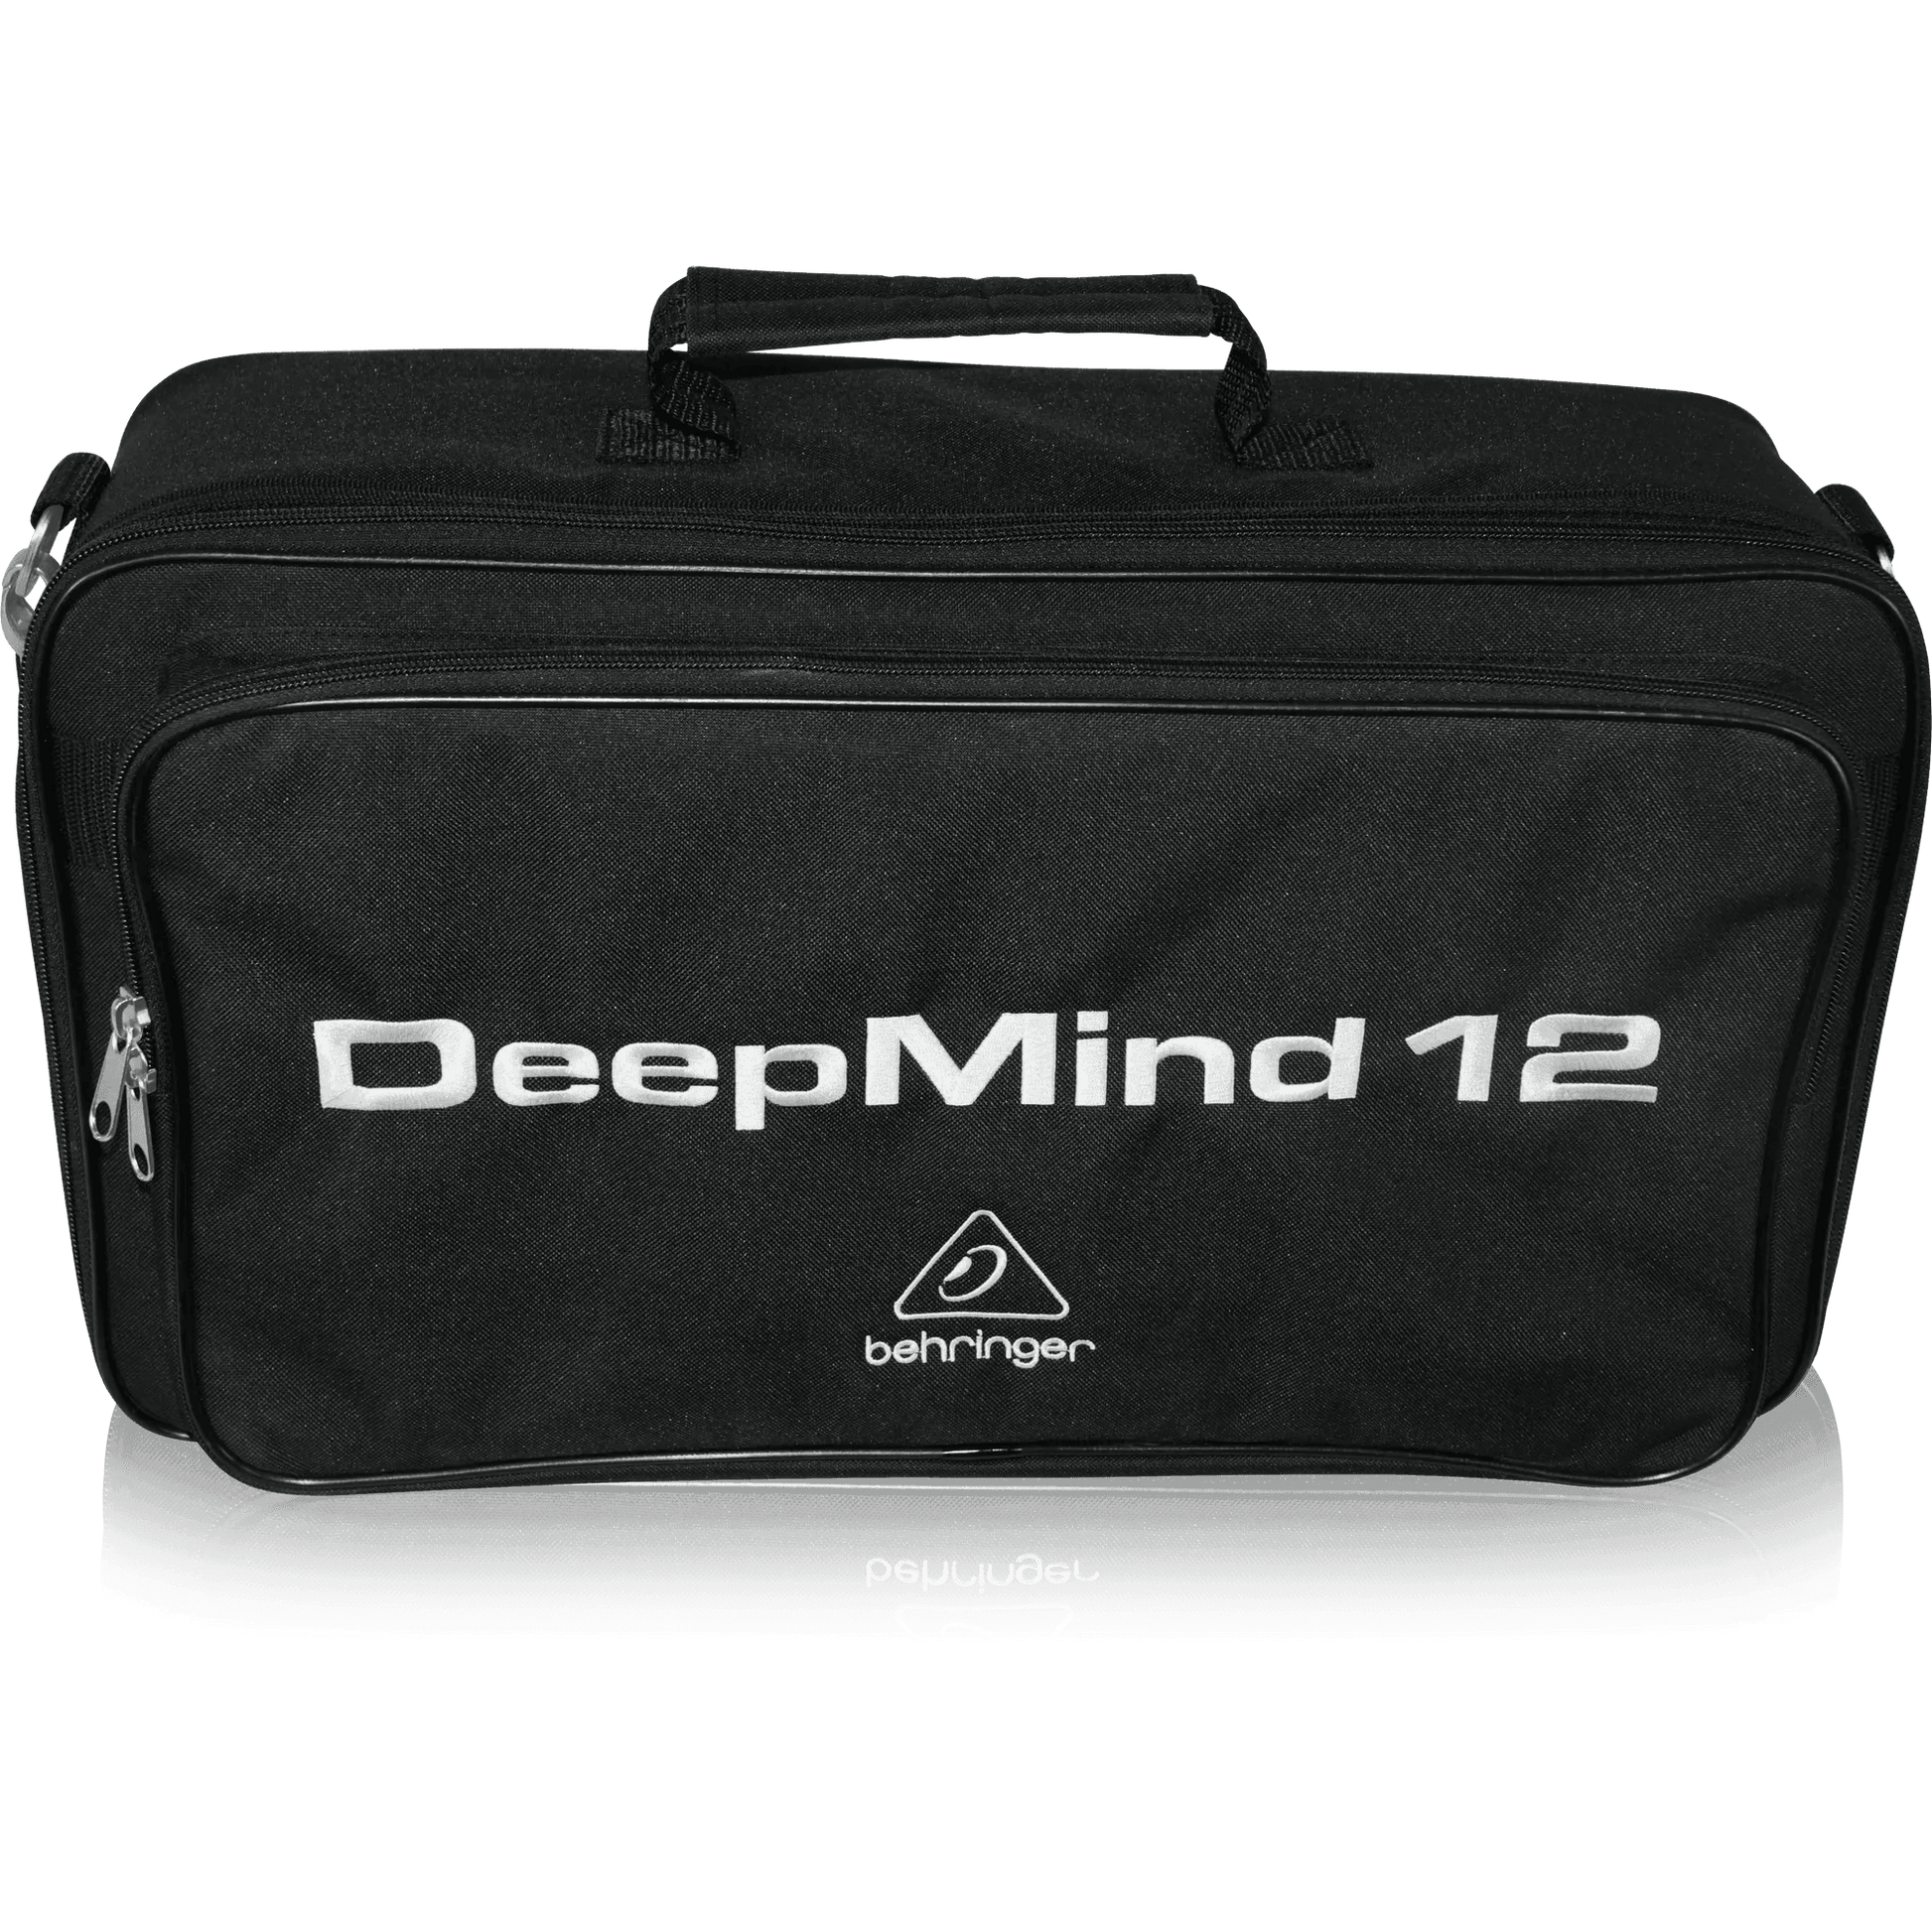 Behringer DEEPMIND 12D-TB Deluxe Water Resistant Transport Bag for DEEPMIND 12D